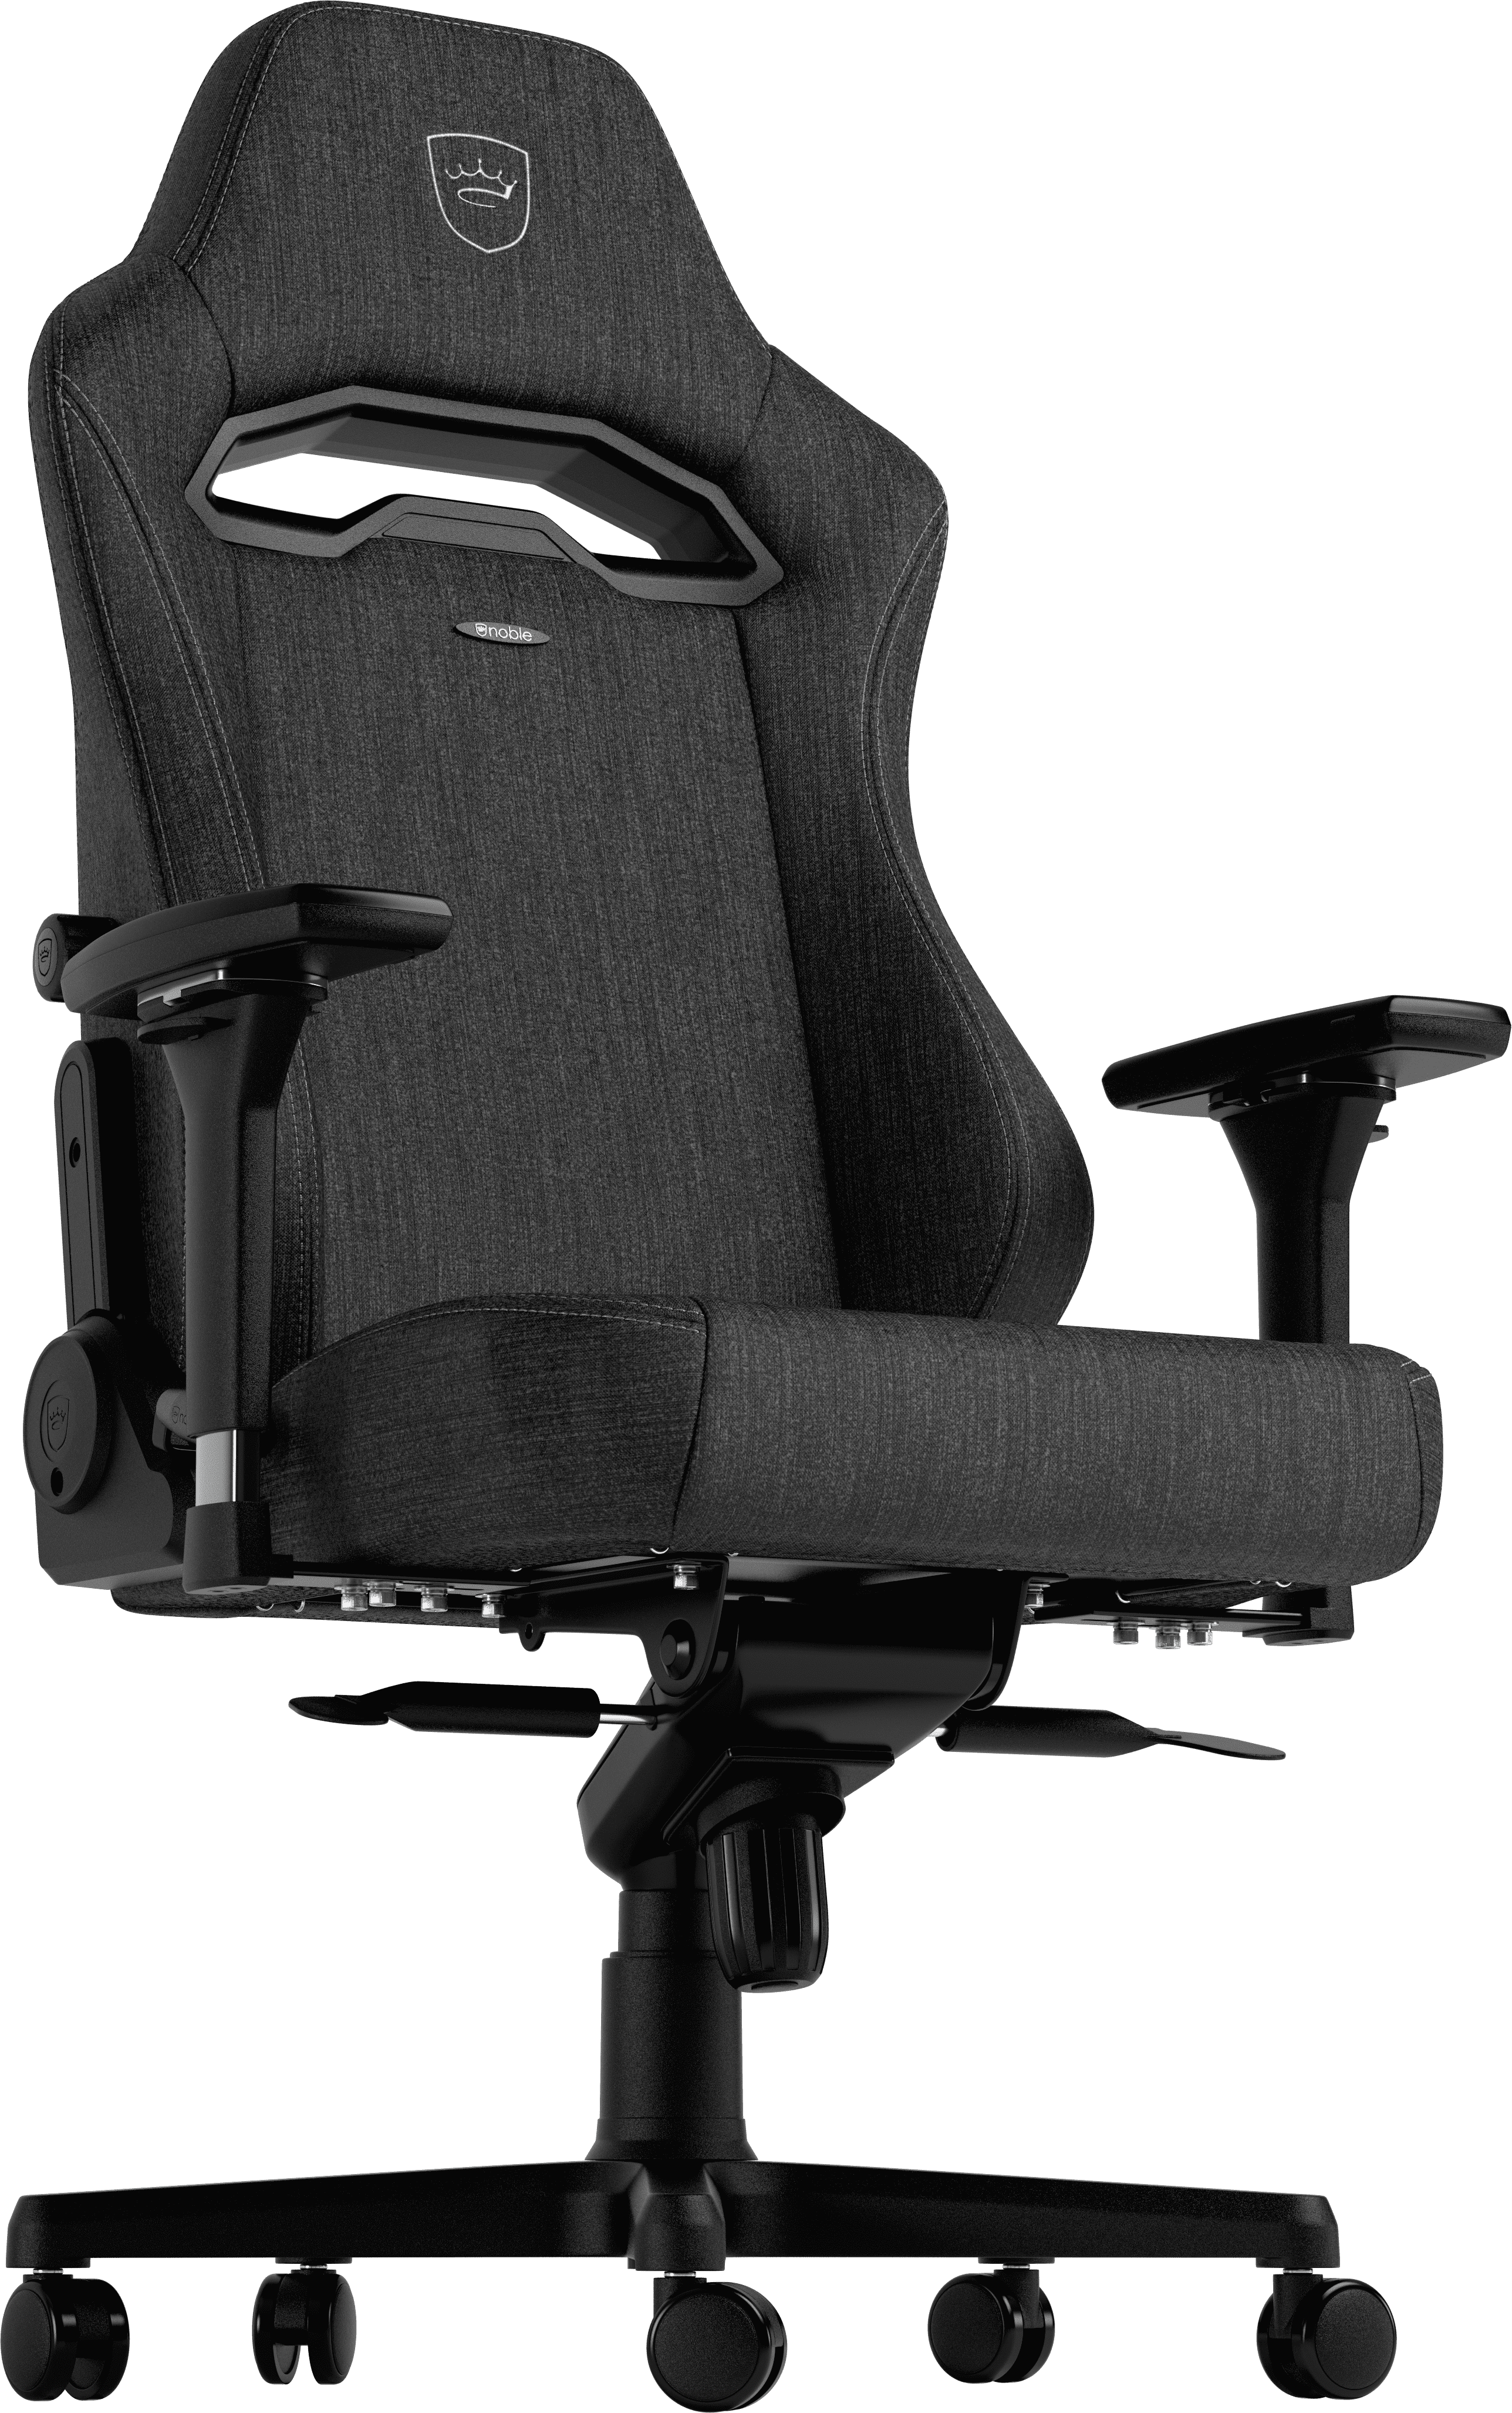 4D armrests